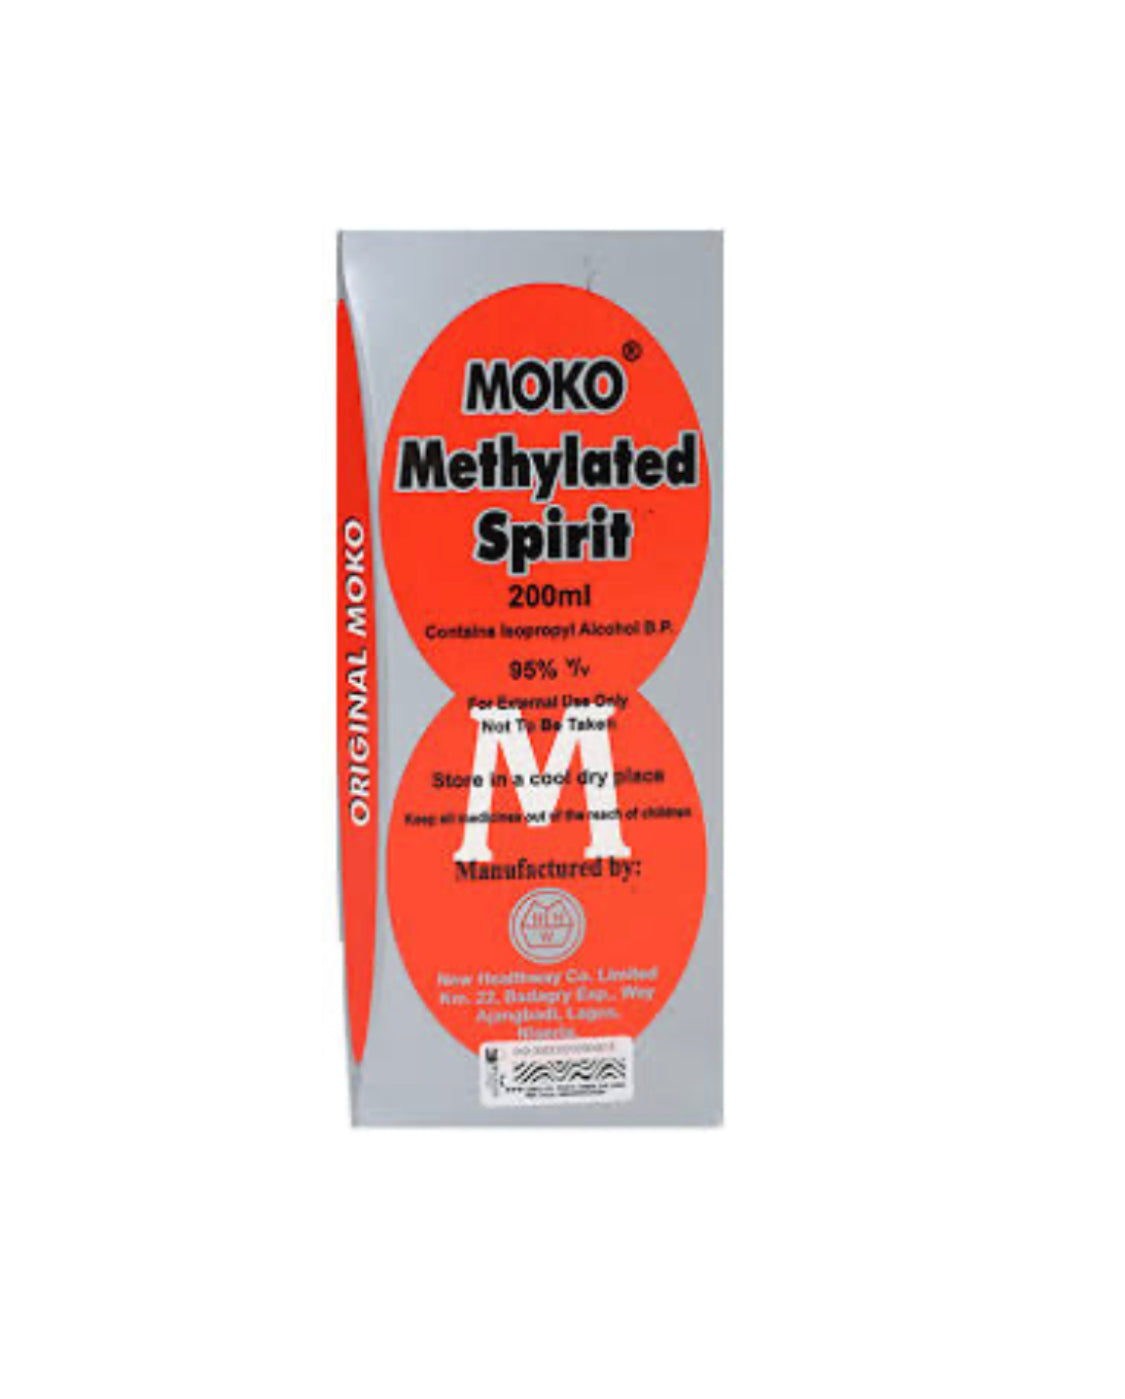 Moko Methylated Spirit